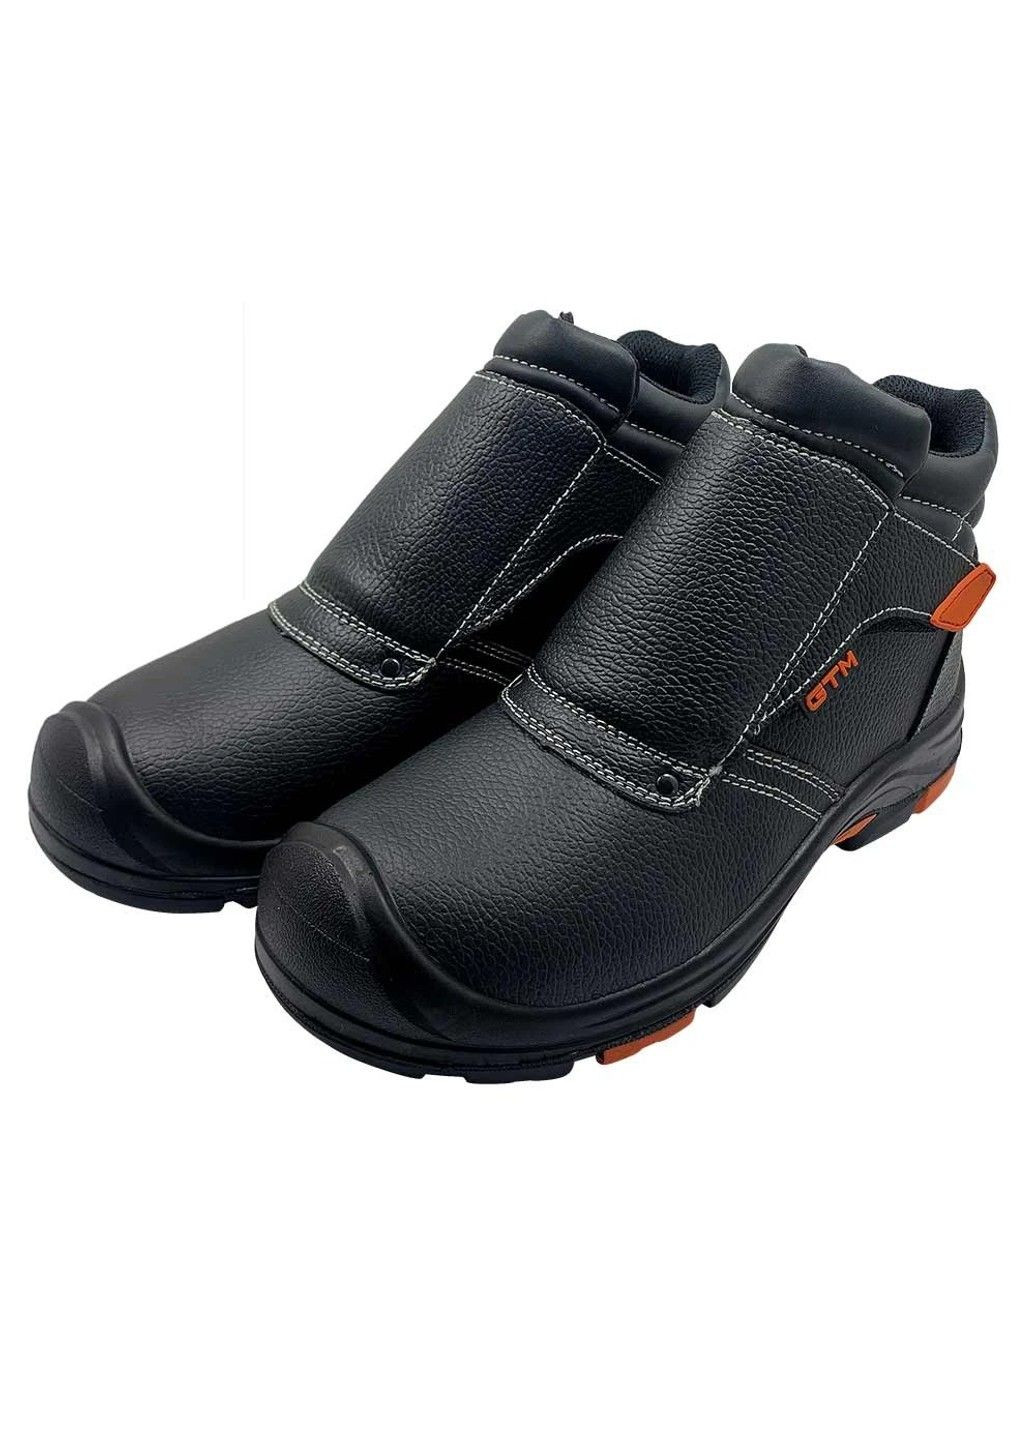 Черные осенние ботинки сварщика с металлическим носком и стелькой sm-072 comfort GTM